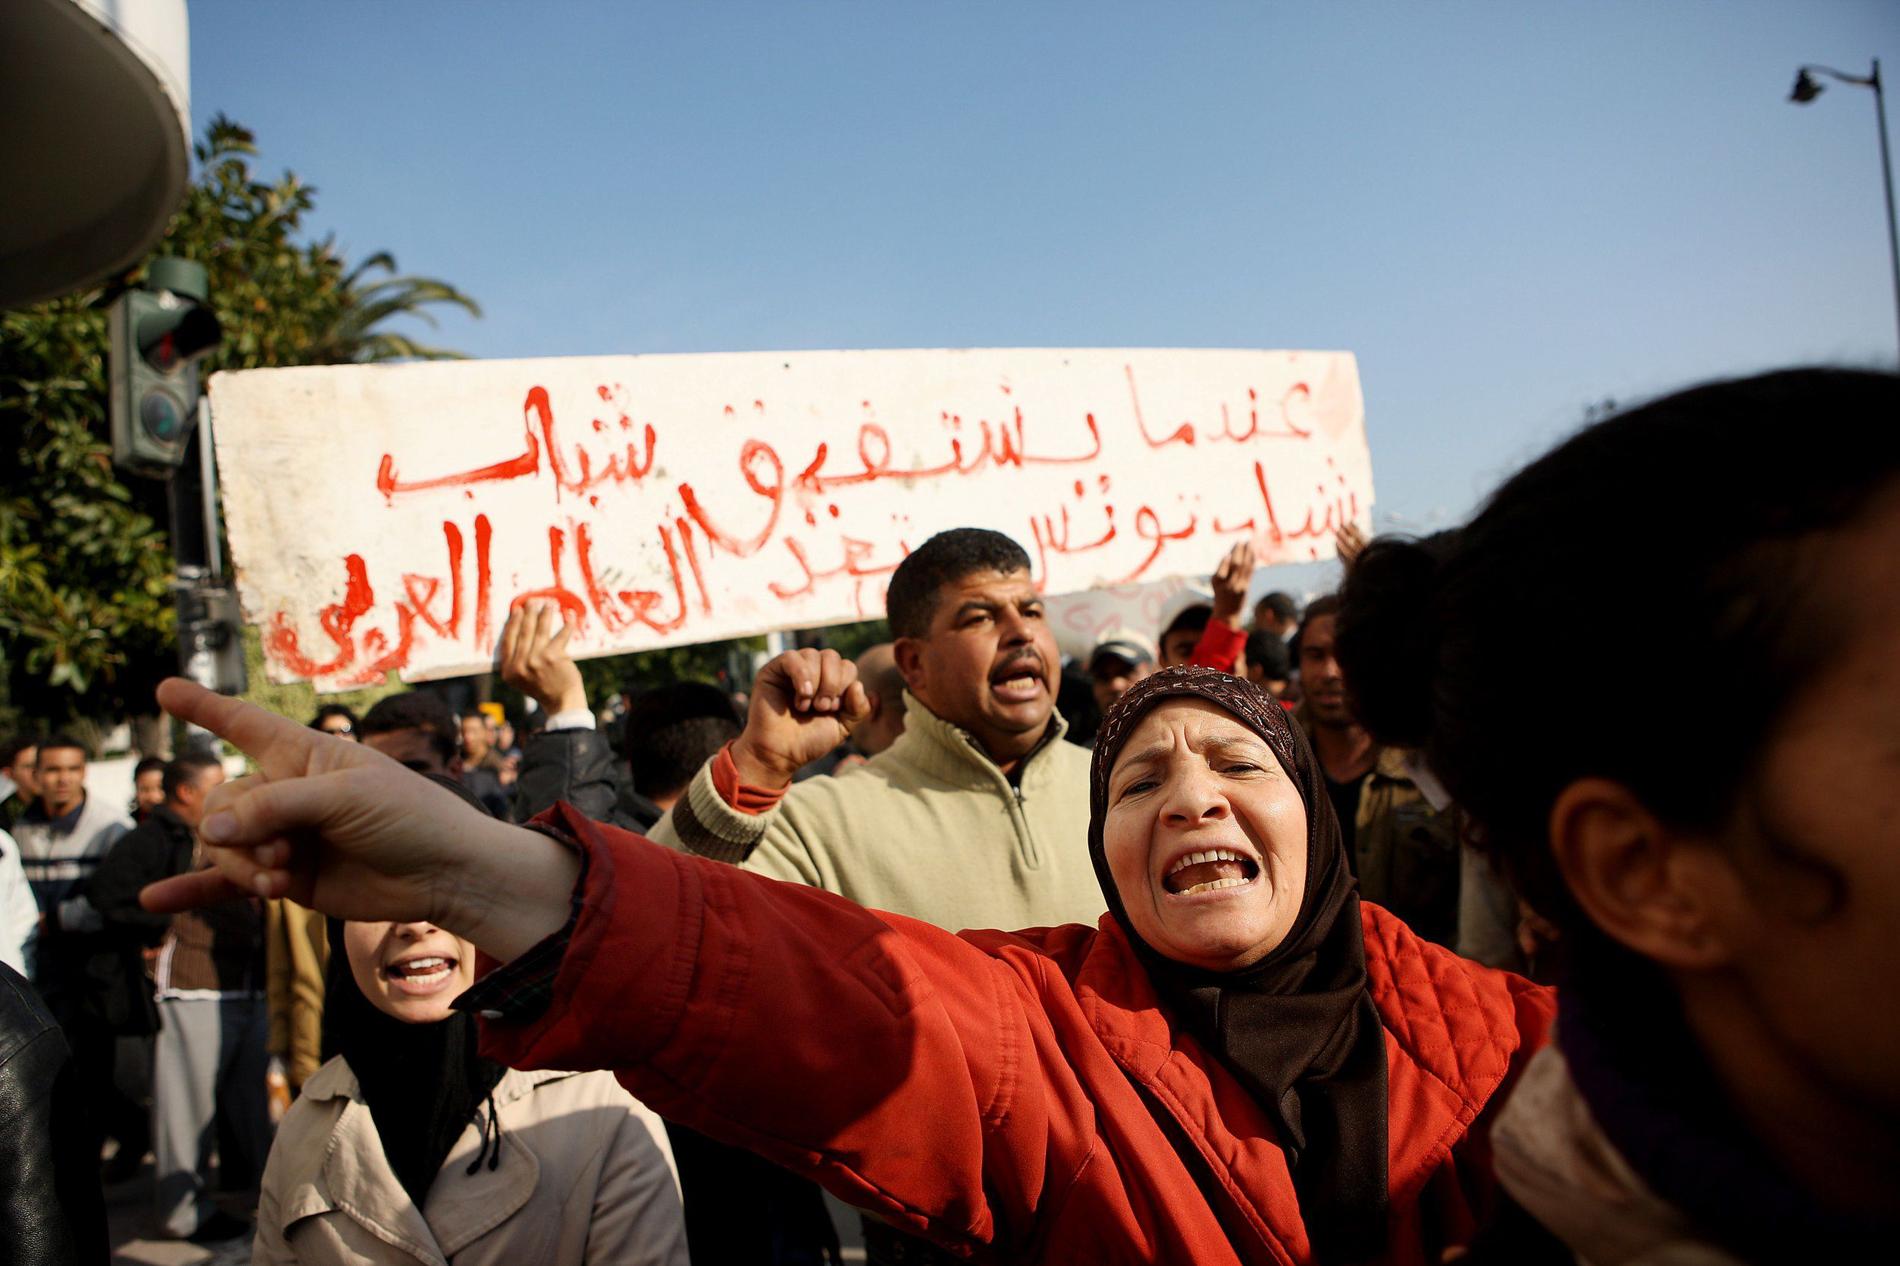 Jasminrevolutionen. Kvartetten prisas för sitt arbete efter Jasminrevolutionen, det folkliga upproret i Tunisien 2010–2011. Här protester i Tunis i januari 2011.